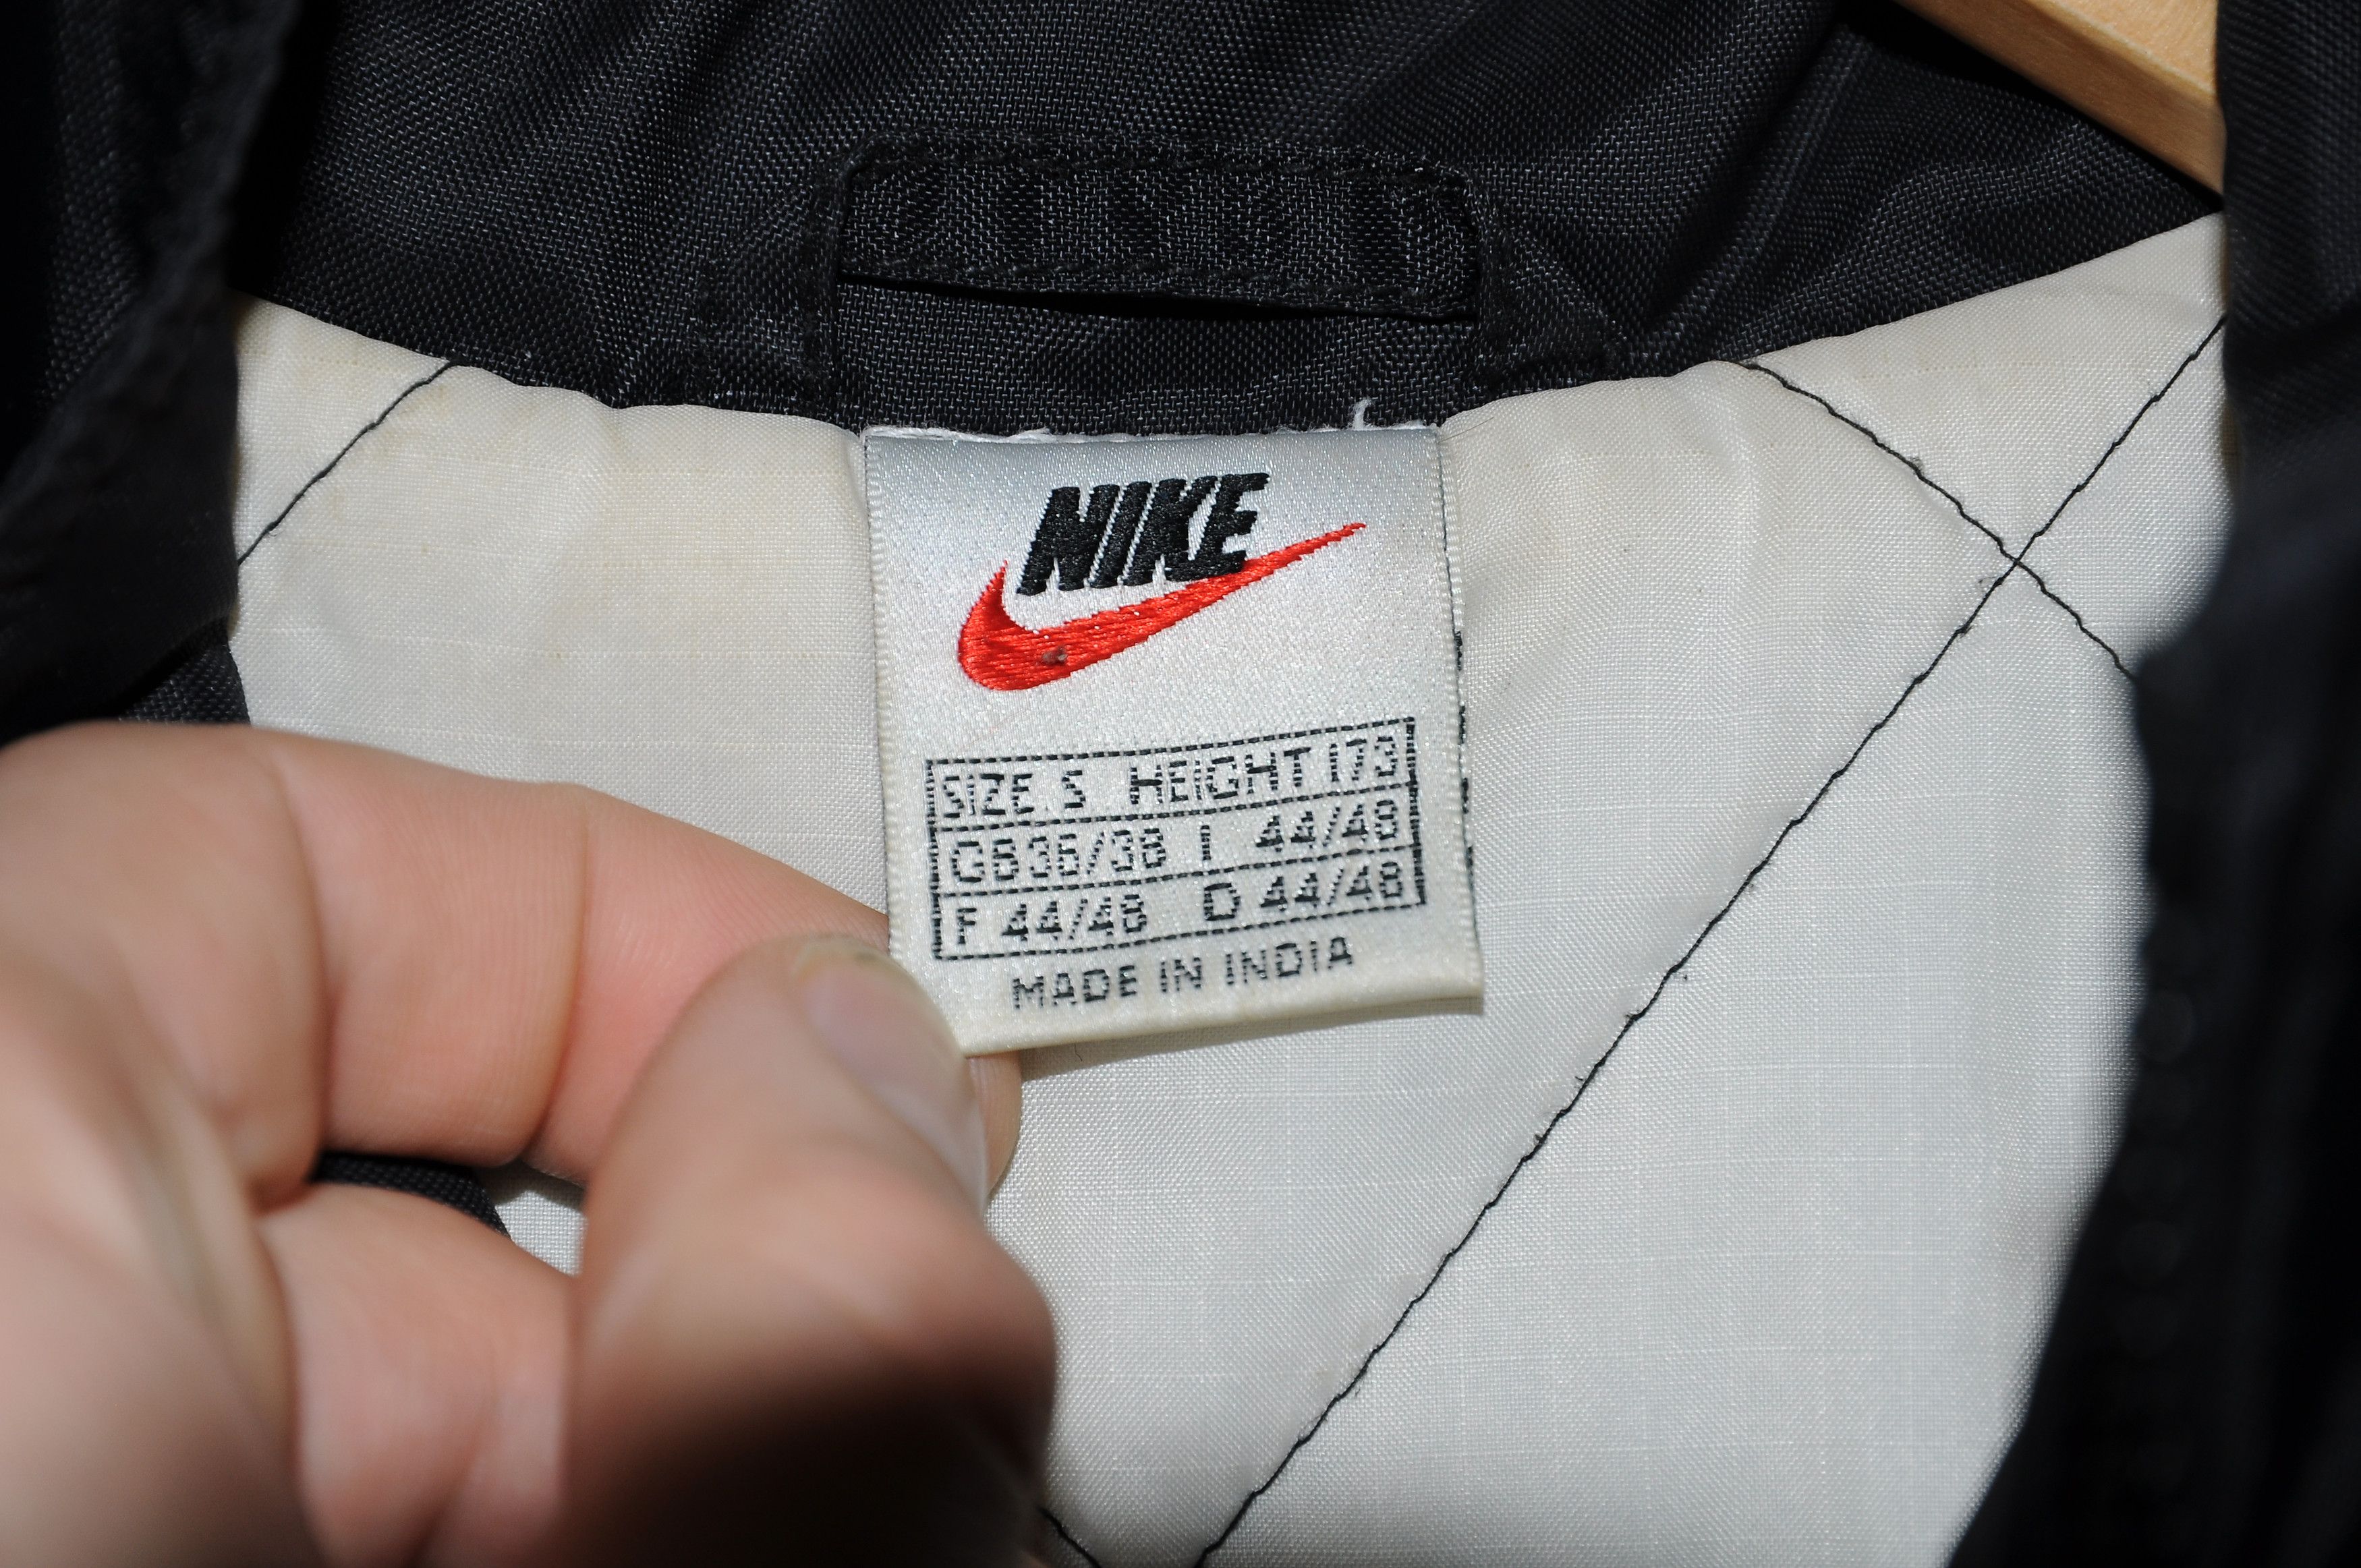 Nike vintage Nike mens Nylon Track Jacket Black White Retro 90s Size US S / EU 44-46 / 1 - 7 Preview